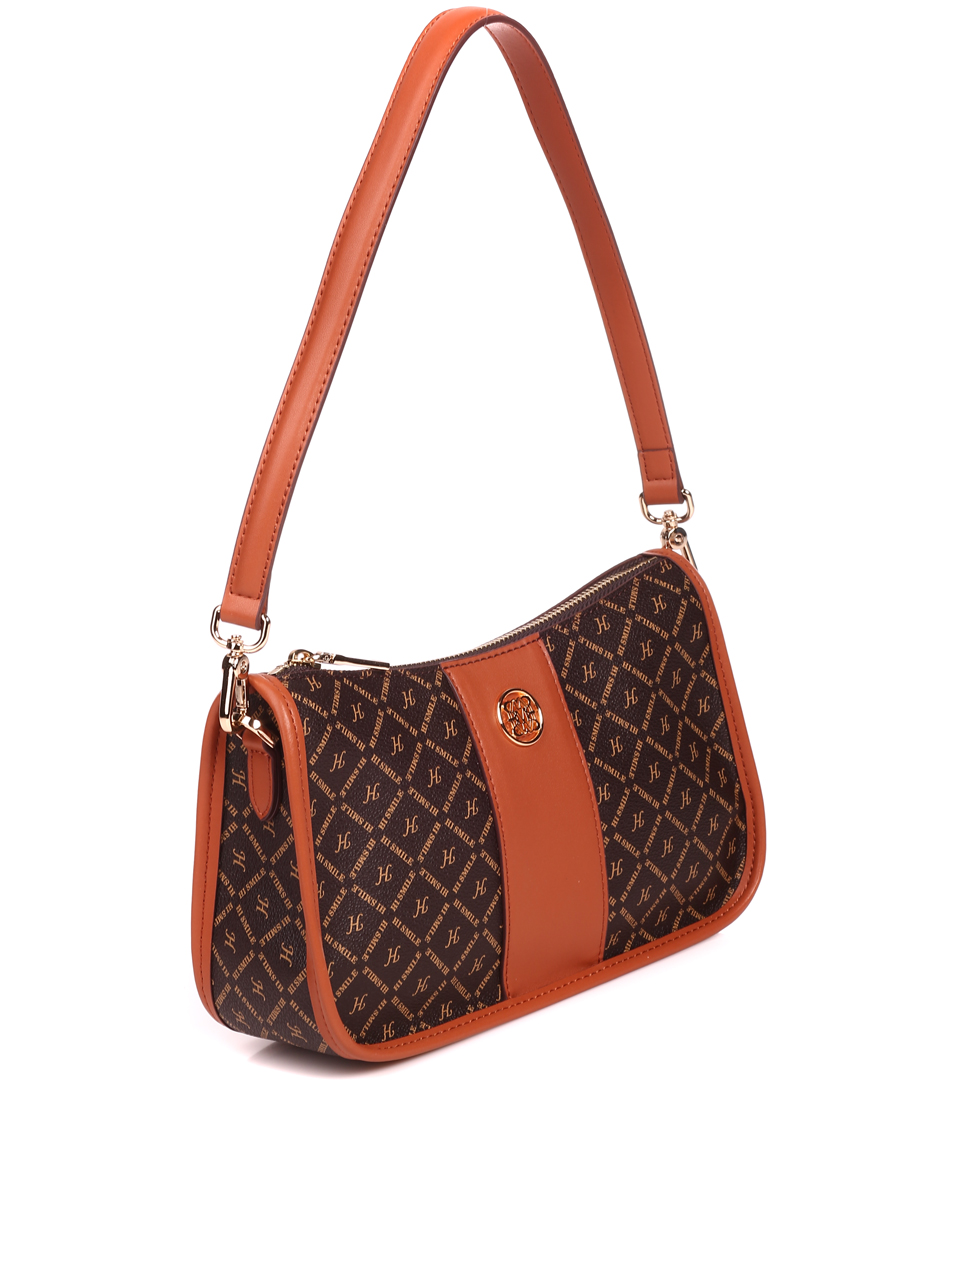 Ежедневна дамска чанта от естествена кожа в кафяво L20420 brown/camel